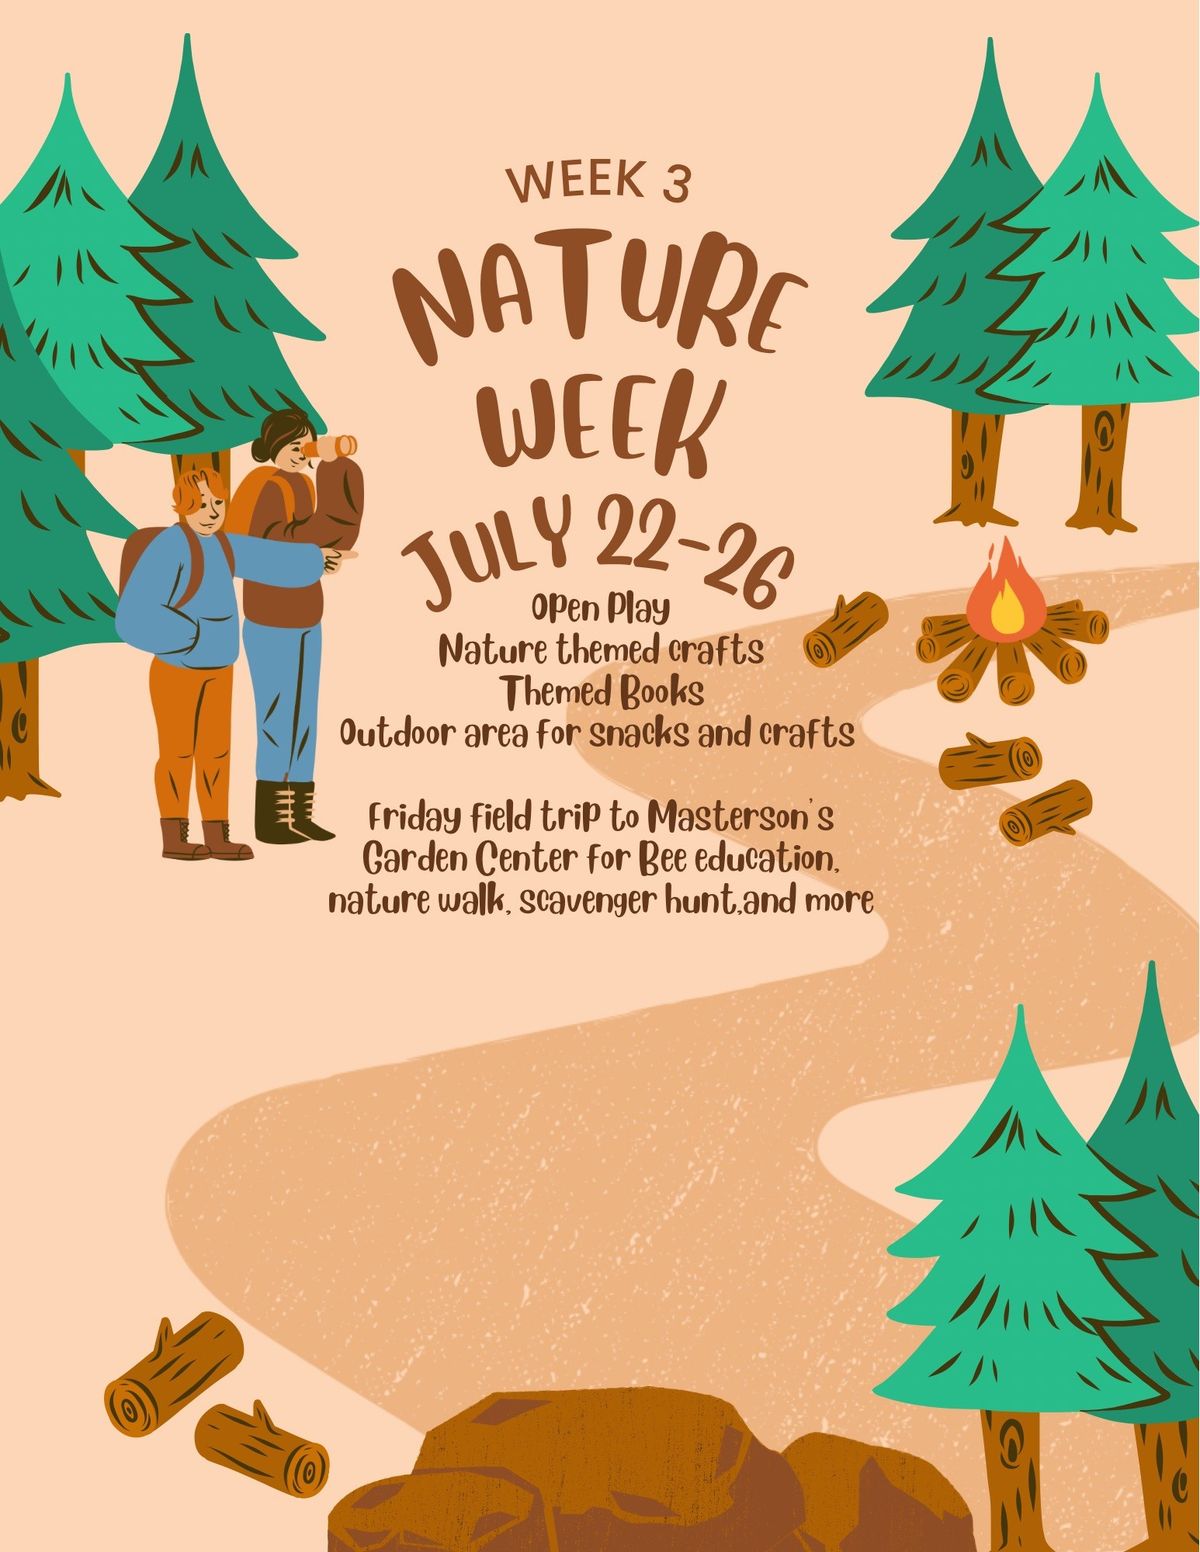 Summer Camp Week 3 - Nature Week 